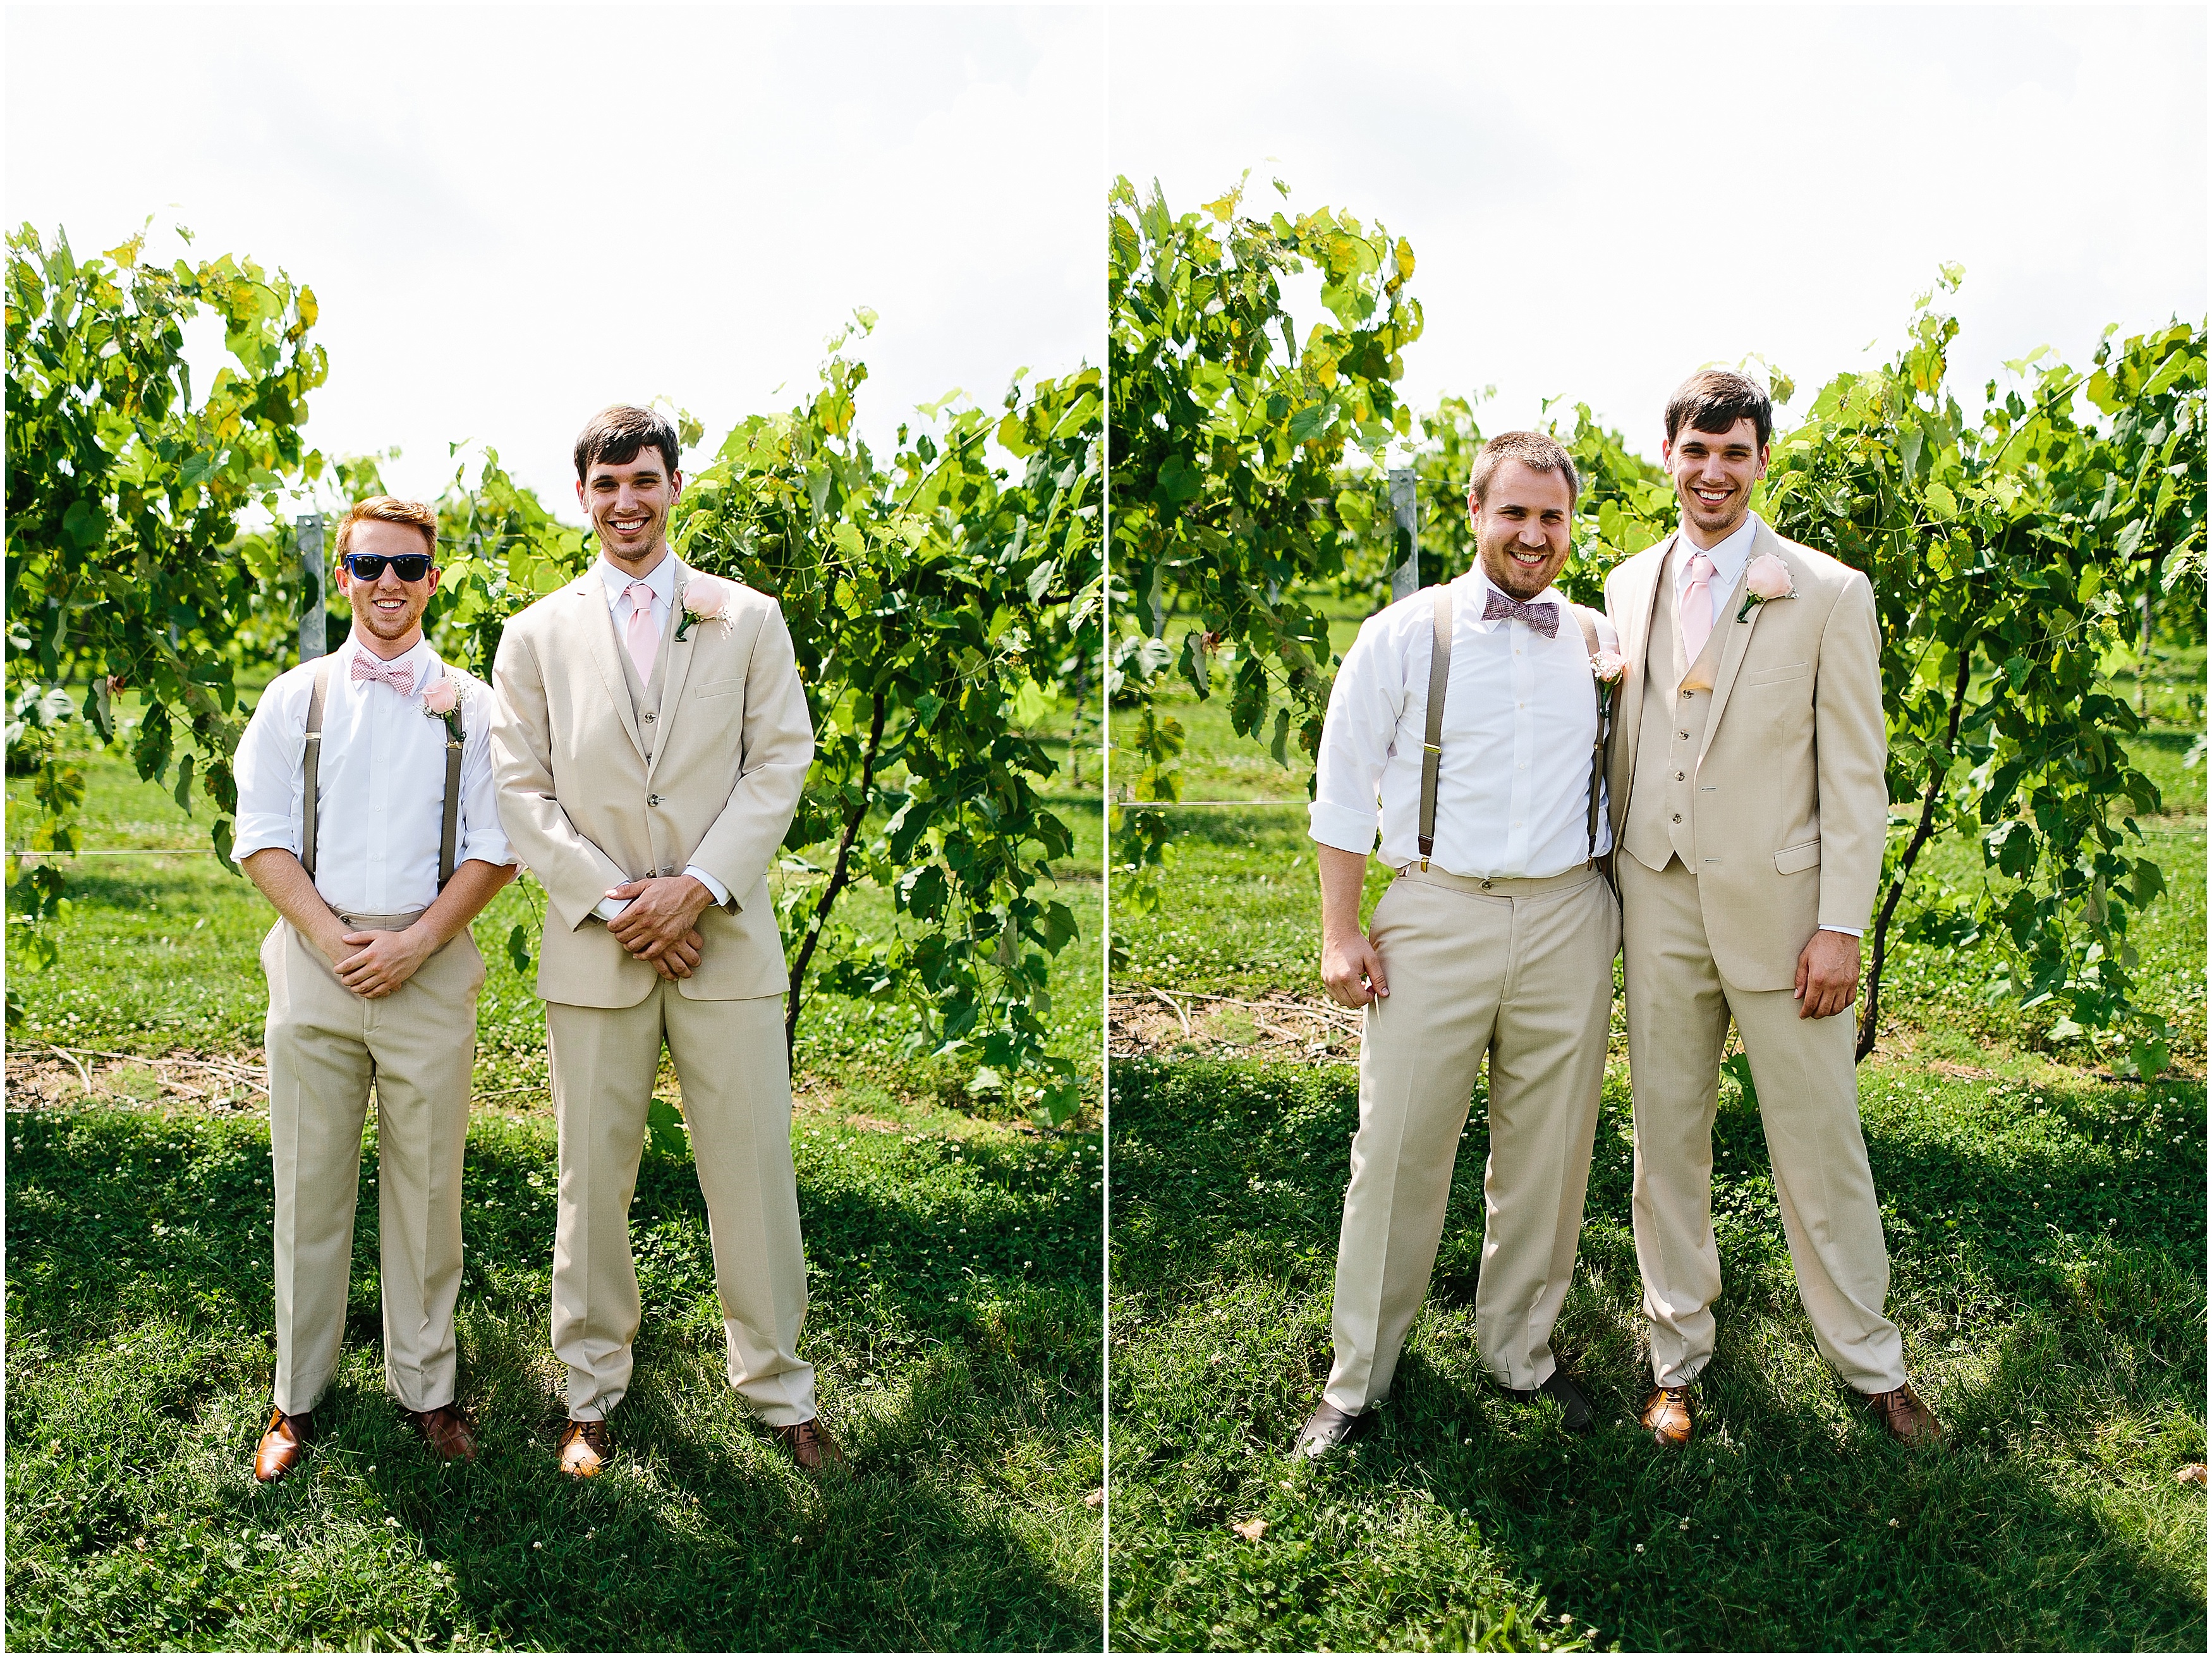 candid wedding photography. creative wedding images. natural wedding photography. winery wedding. vineyard wedding. southern wedding